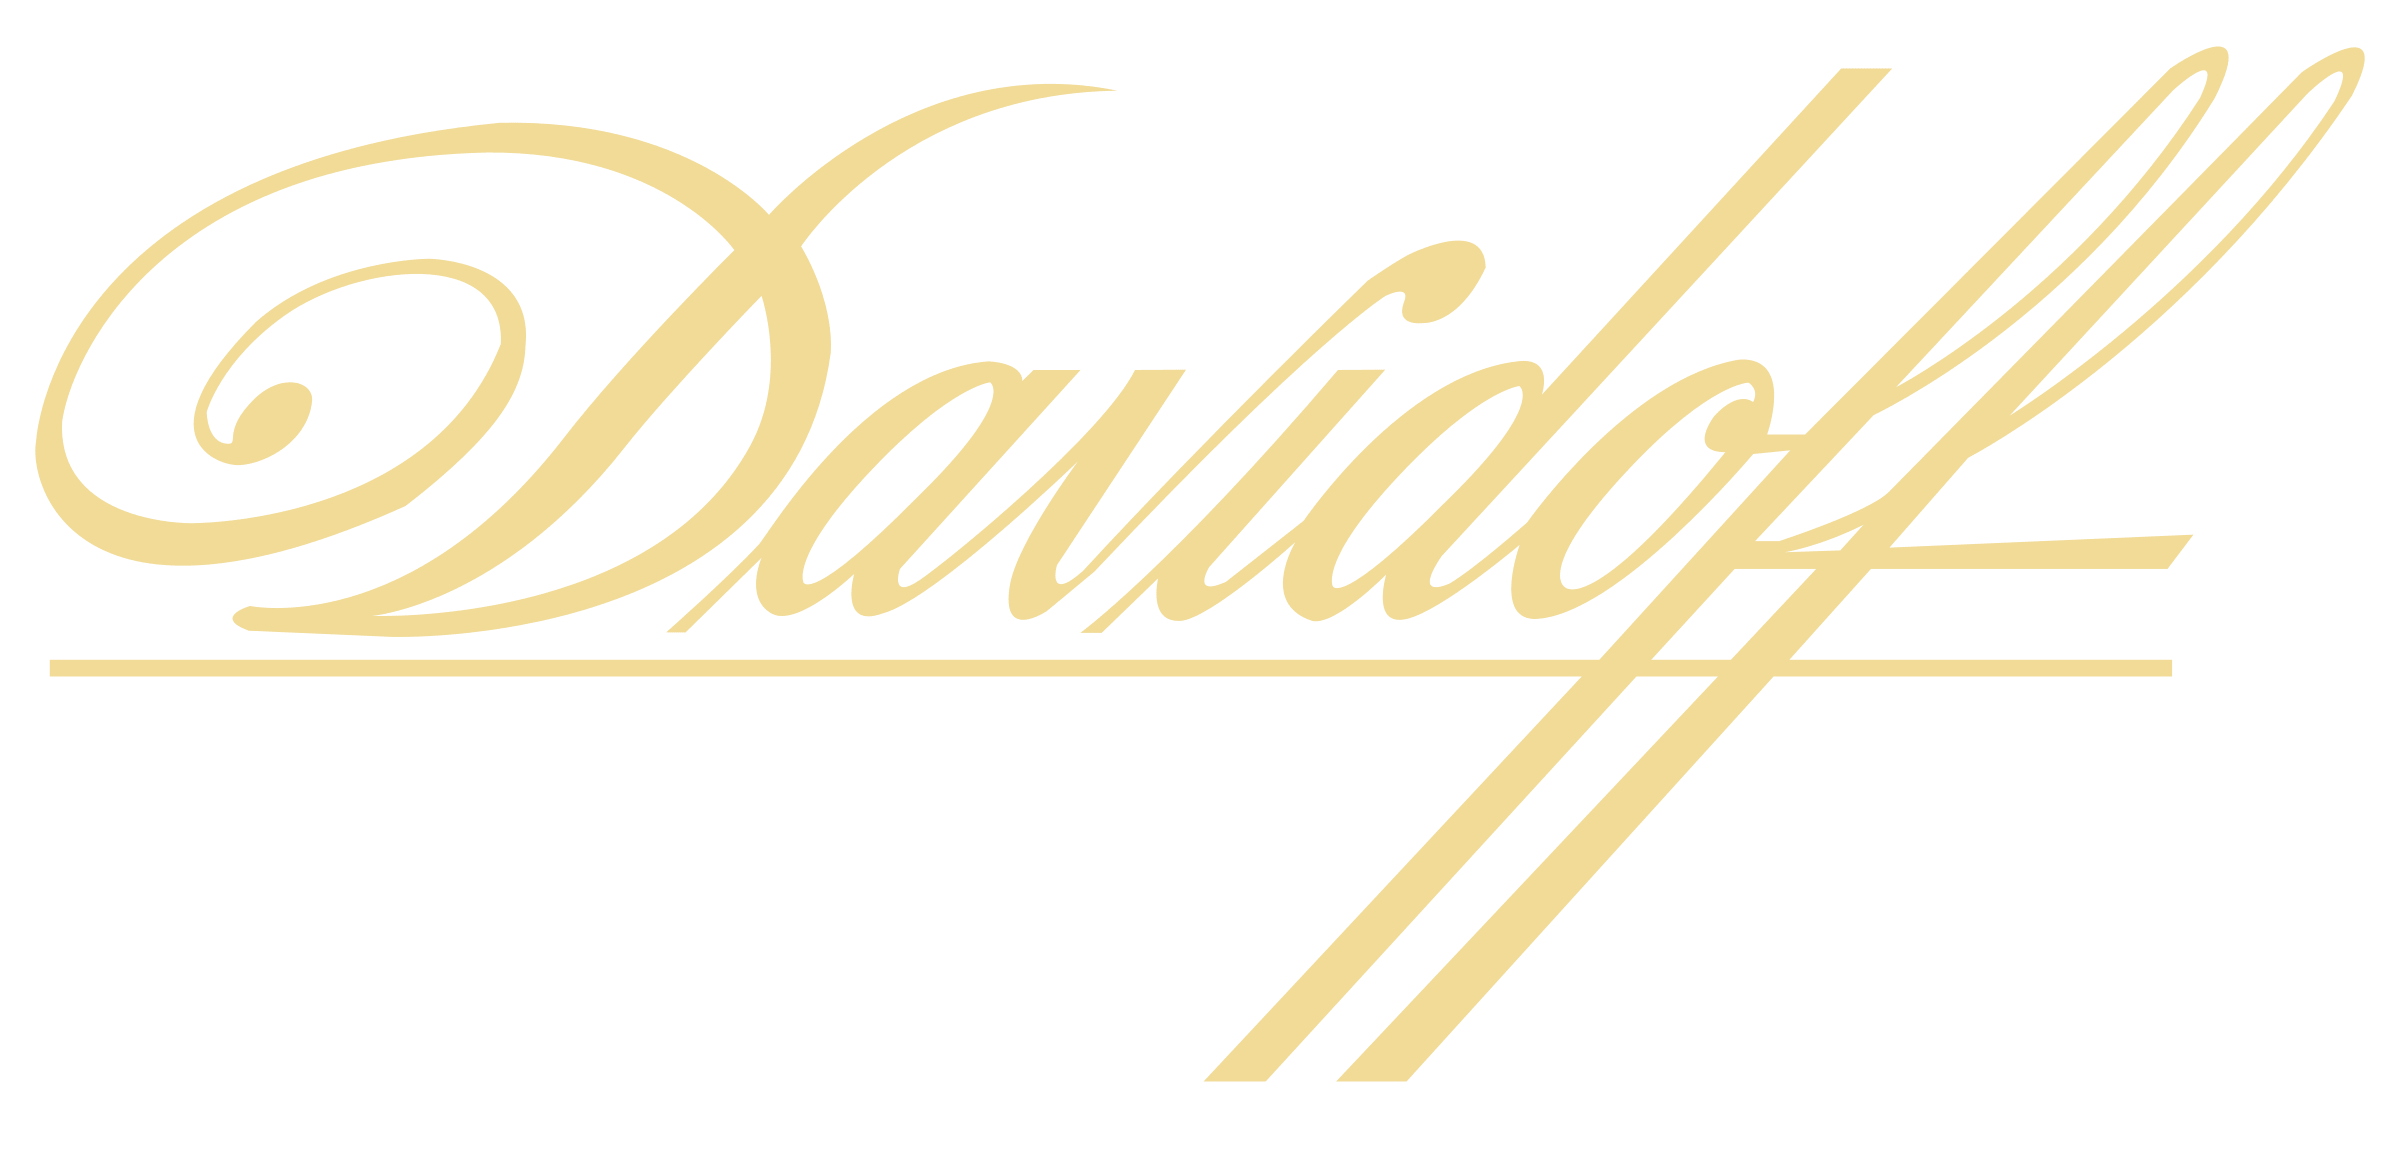 davidoff-logo-png-transparent